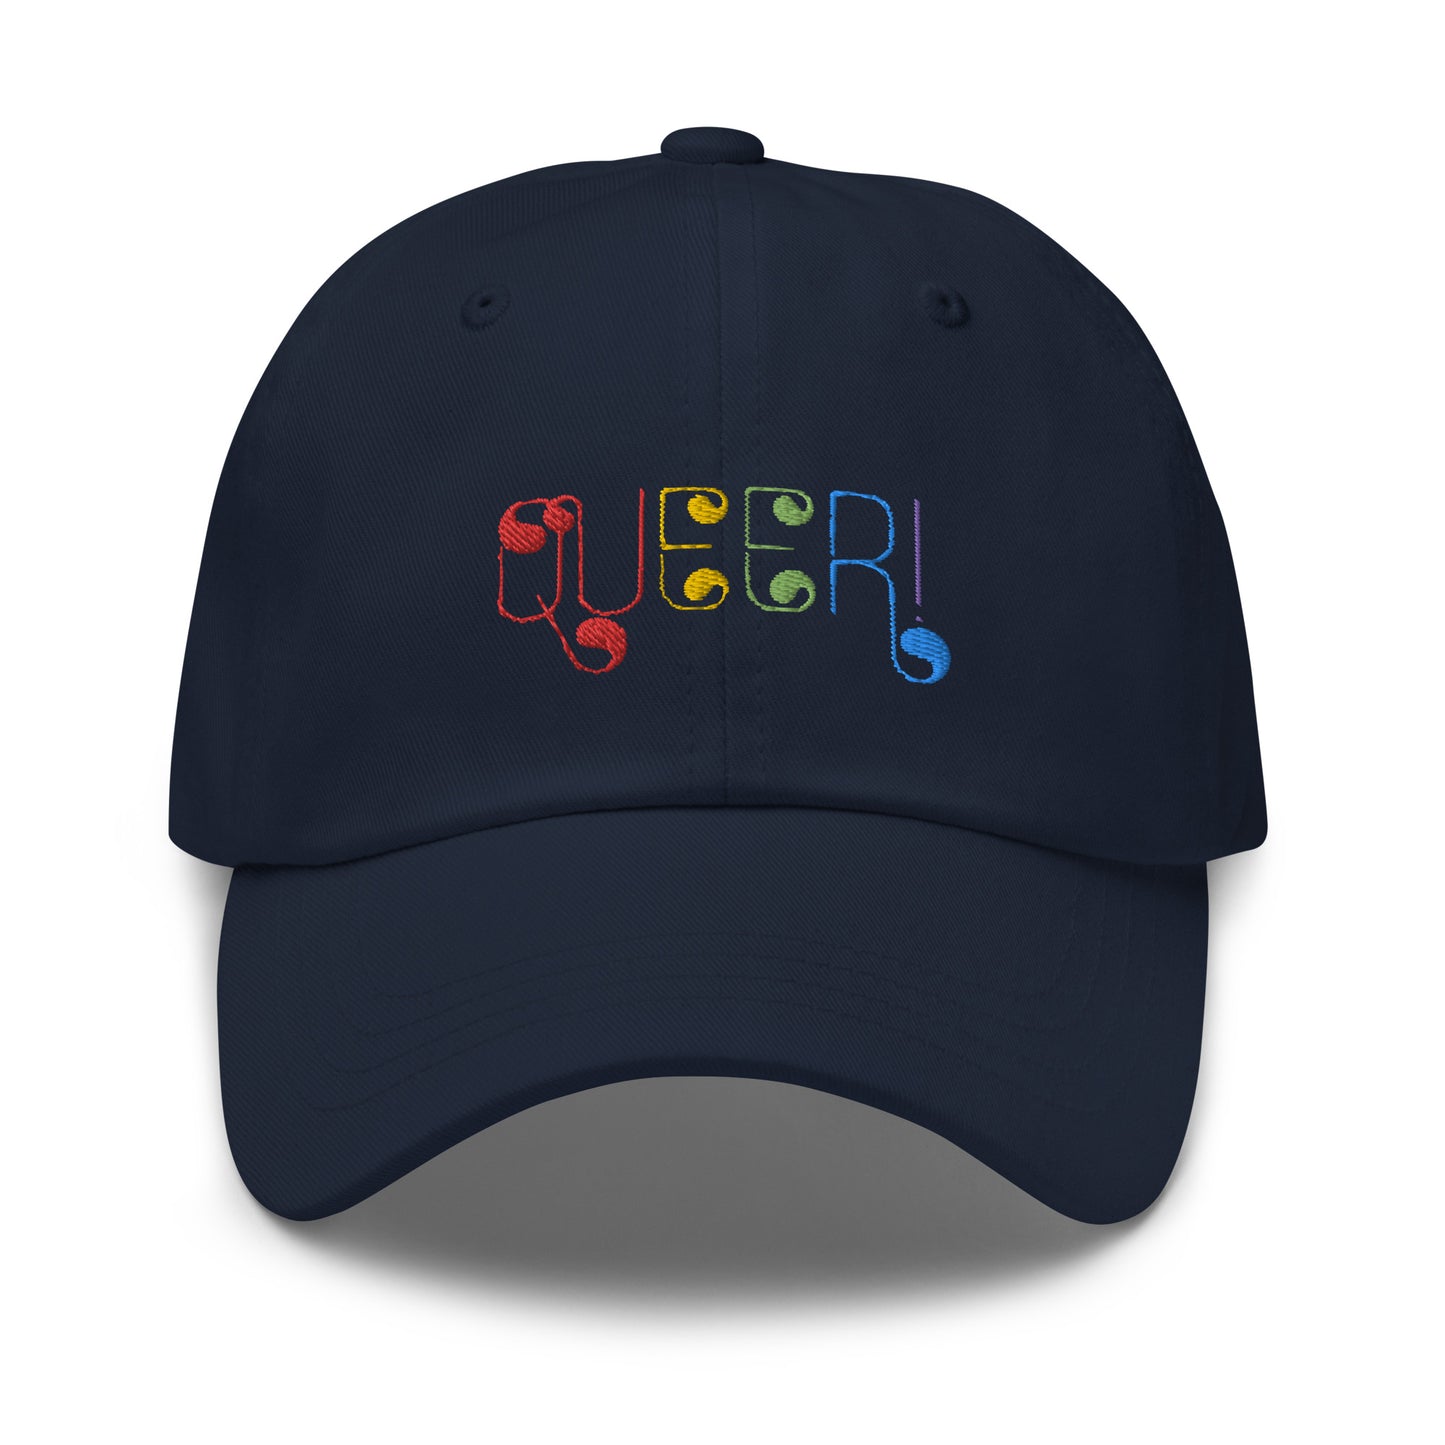 Queer Pride Hat